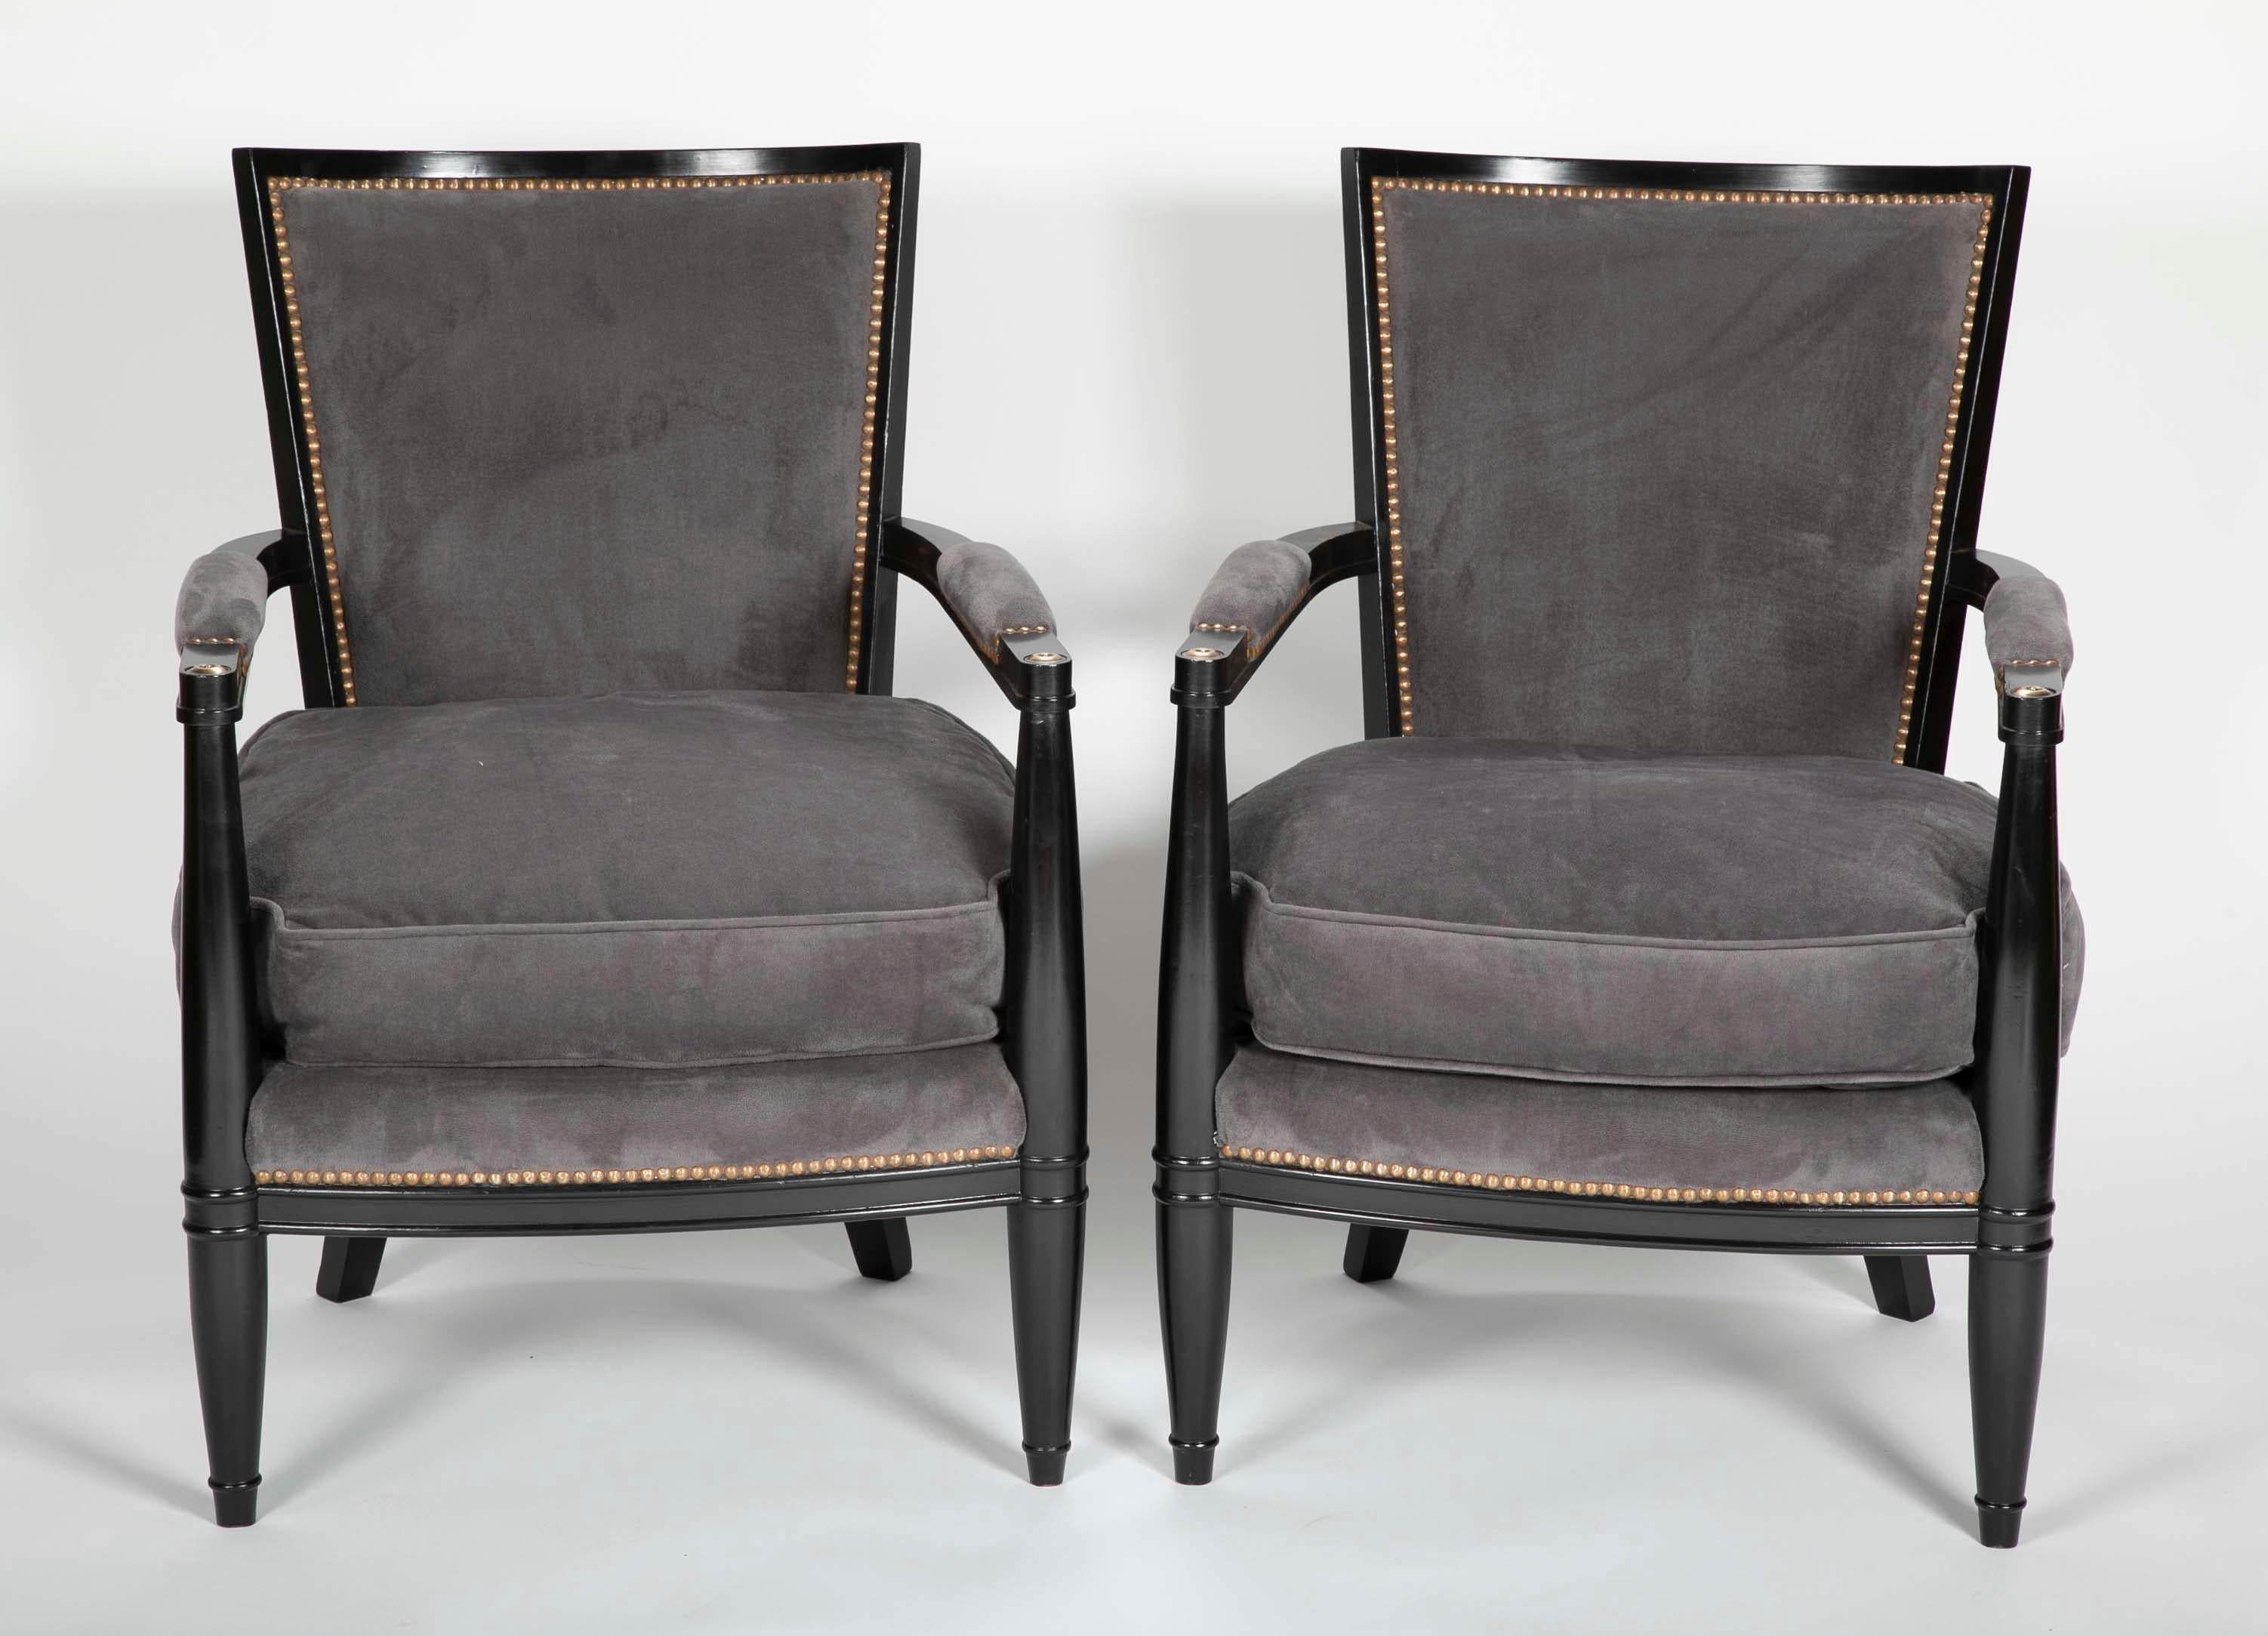 Paar ebonisierte offene Sessel im französischen Directoire-Stil in der Art von Andre Arbus. Rückenlehne und Sitzkissen gepolstert. Maße: Sitzhöhe 17,5